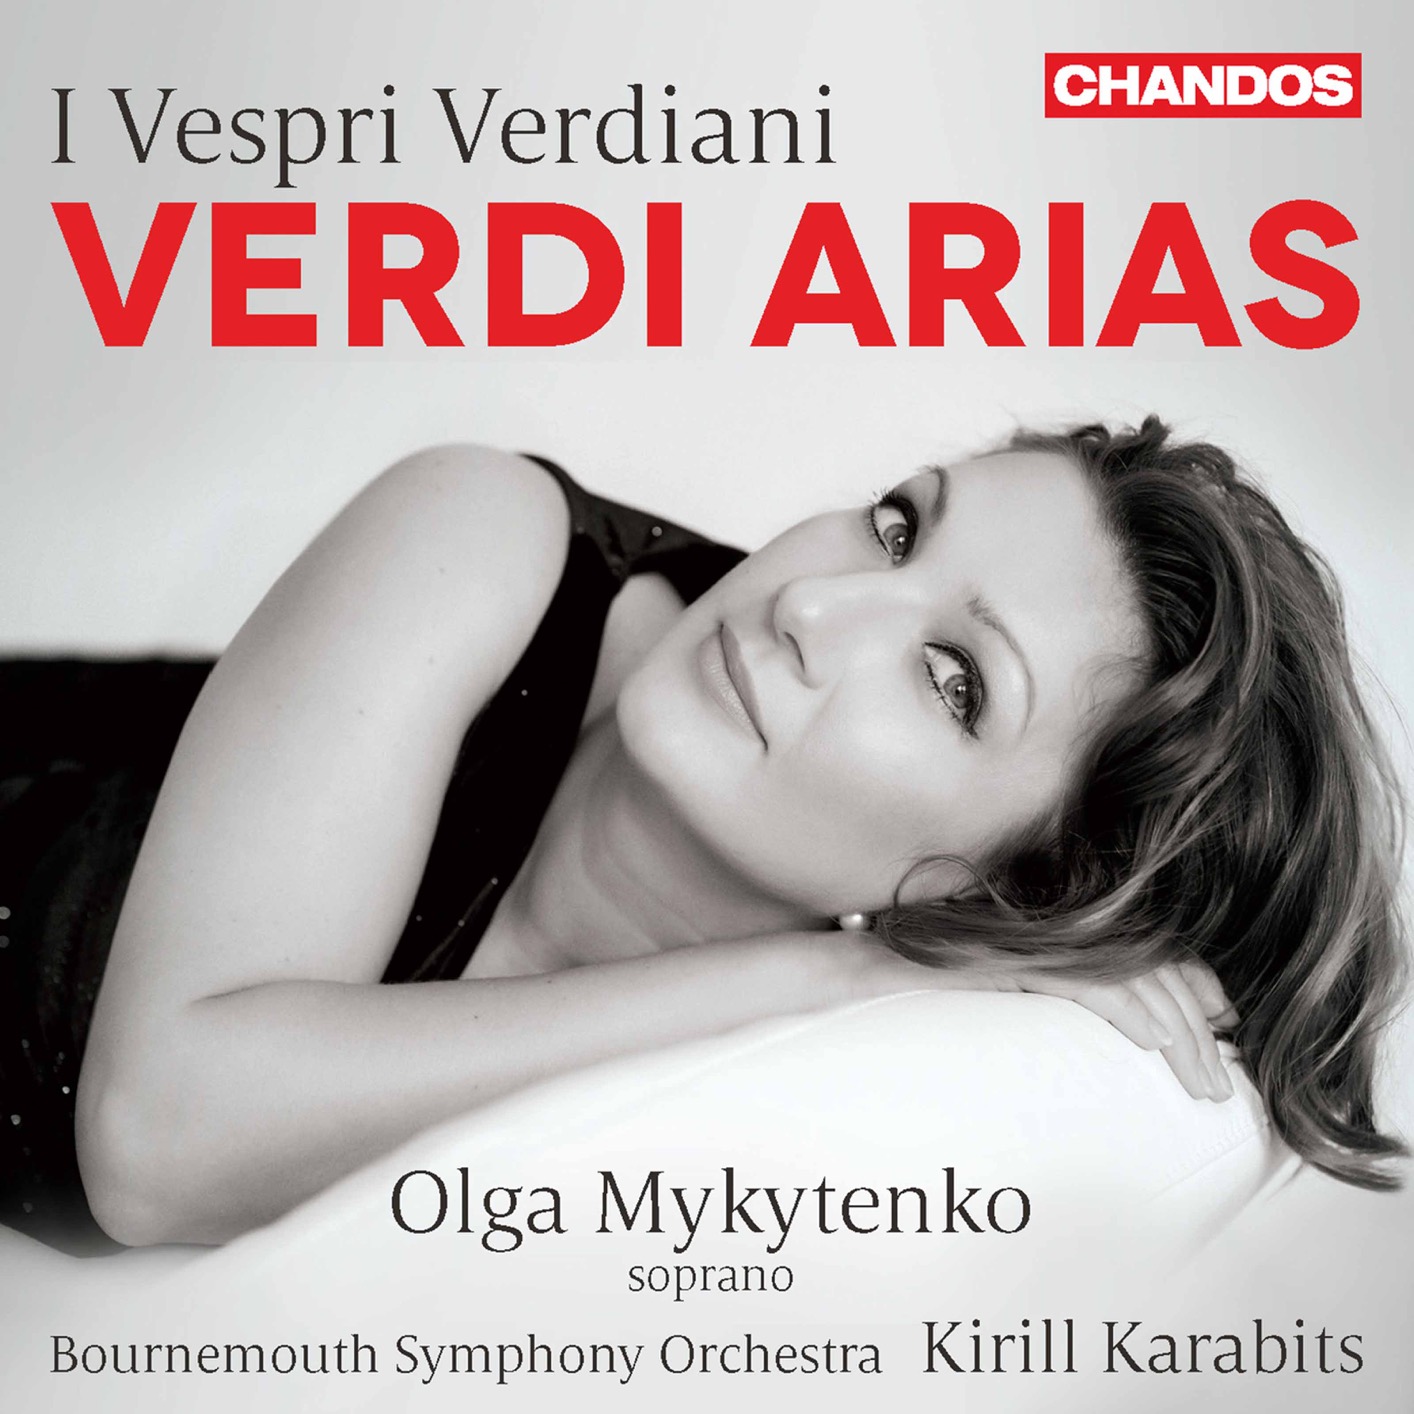 Olga Mykytenko, Bournemouth Symphony Orchestra & Kirill Karabits – I vespri verdiani: Verdi Arias (2020) [FLAC 24bit/96kHz]